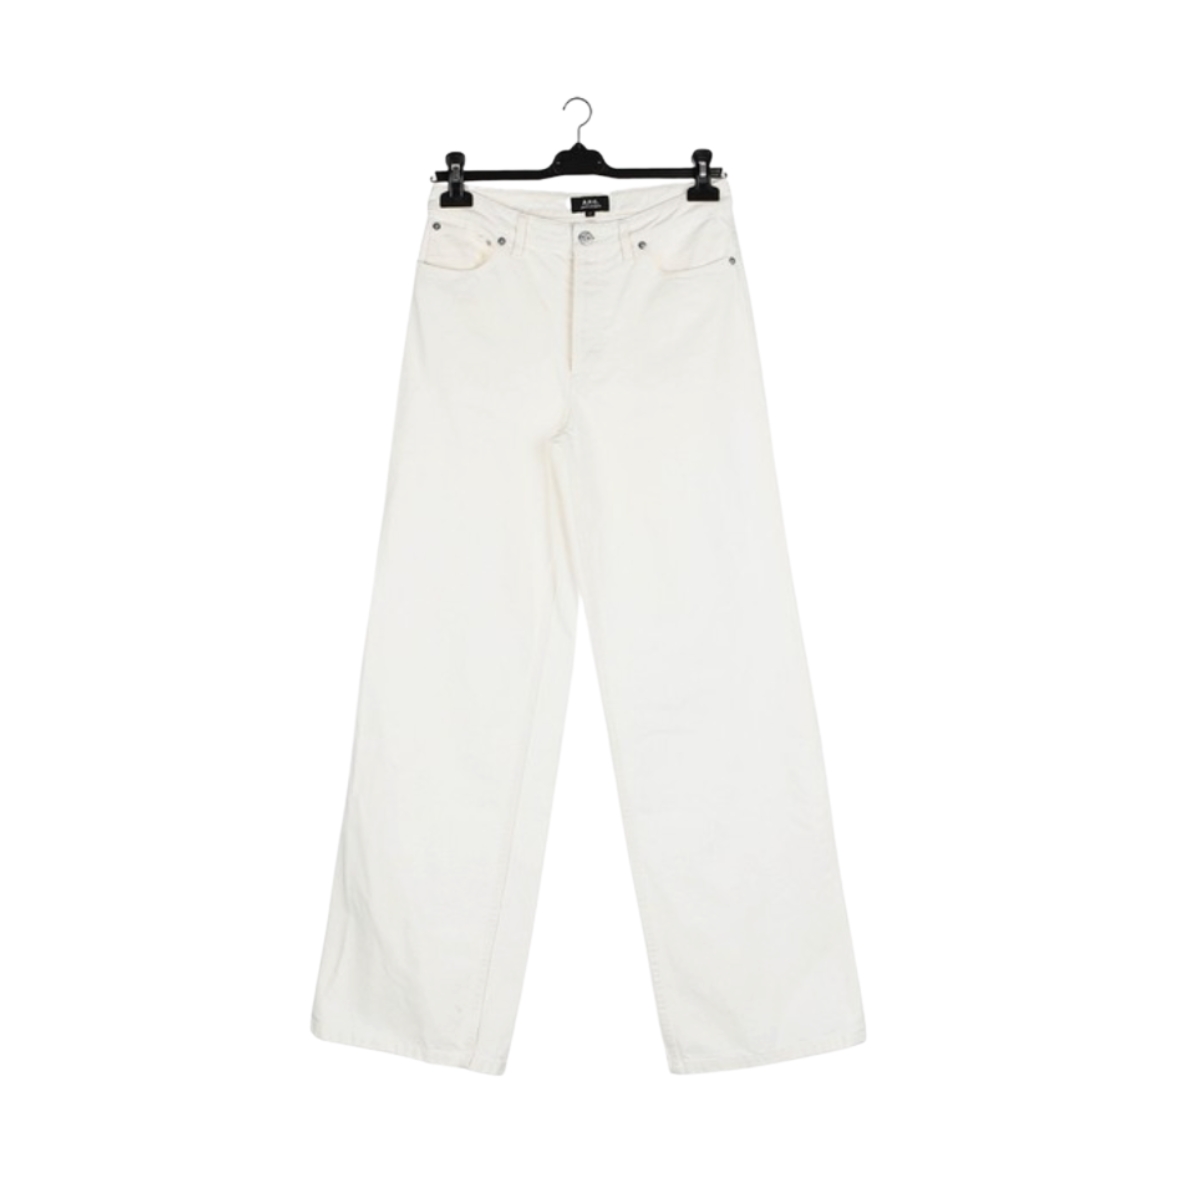 White pants by Kolon Mall